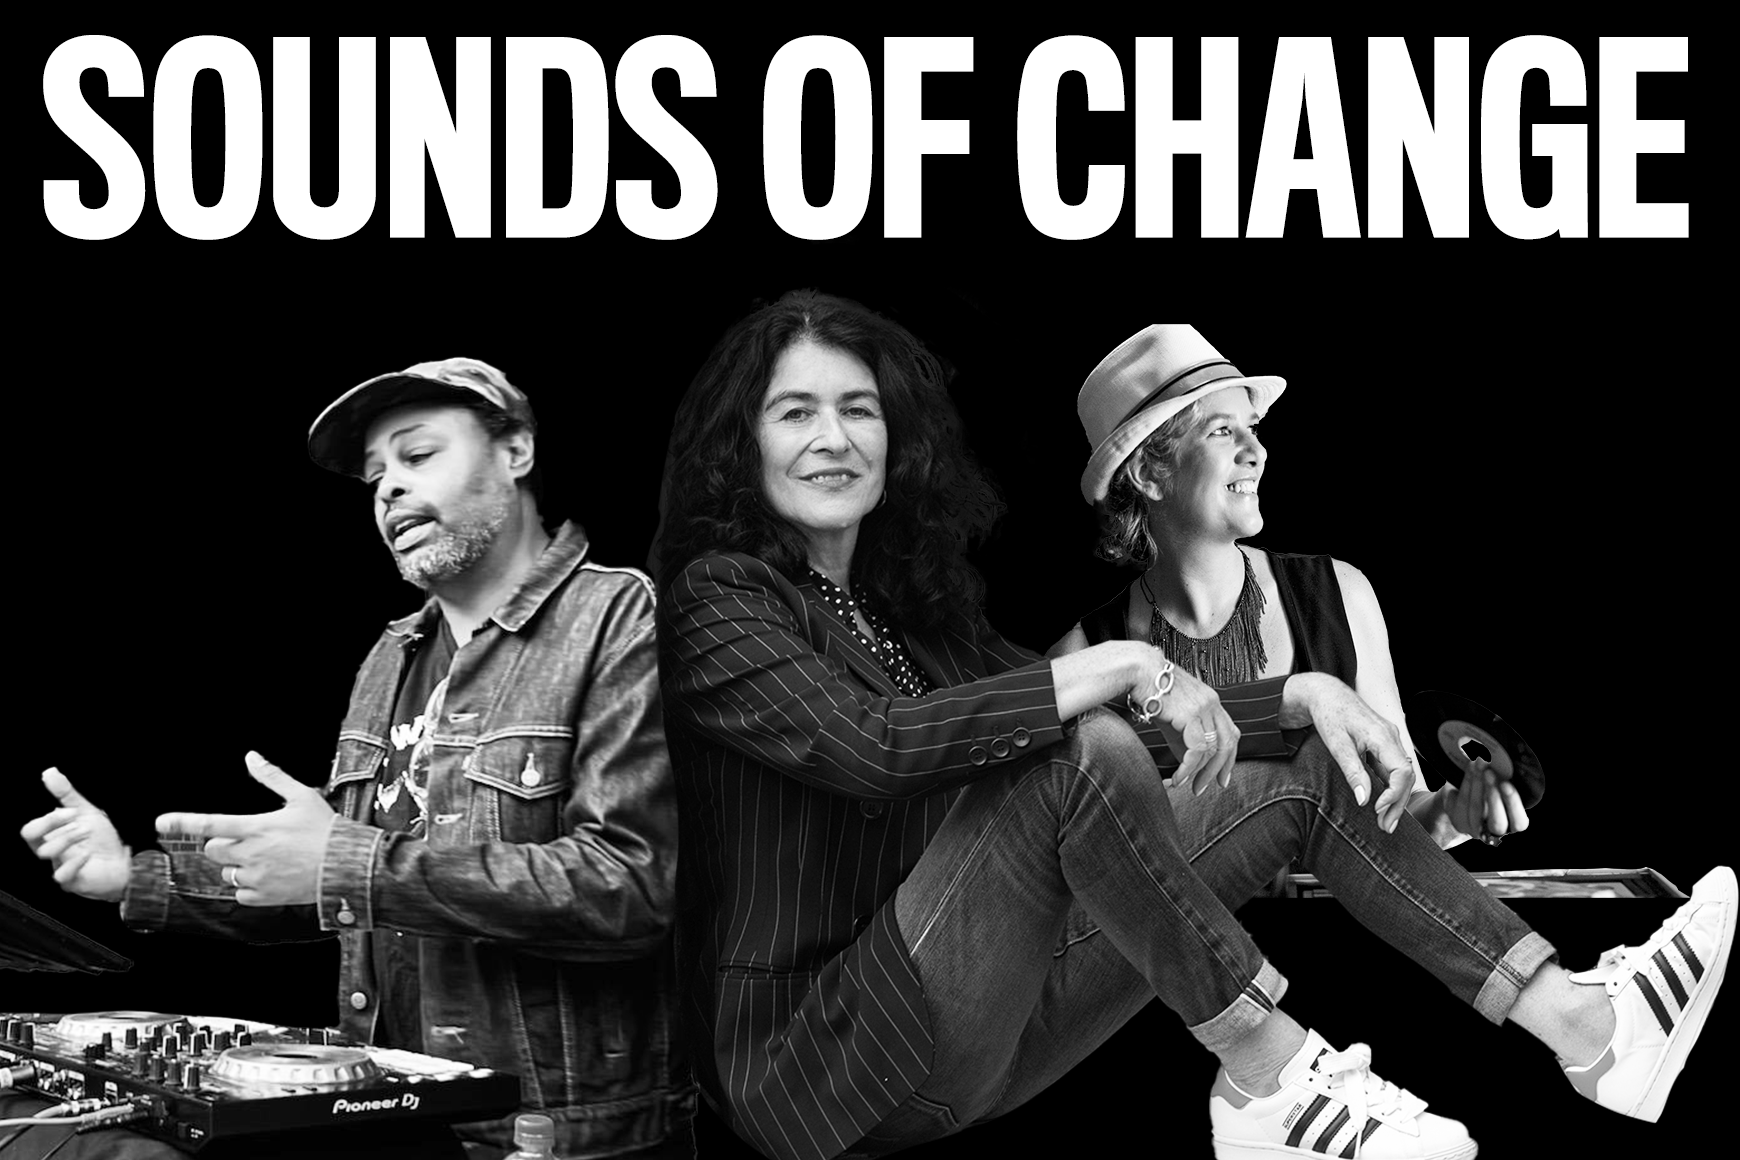 Imagen en blanco y negro con texto en negrita "Sounds of Change" y collage de DJ Misbehaviour, Operator Emz y Janette Beckman